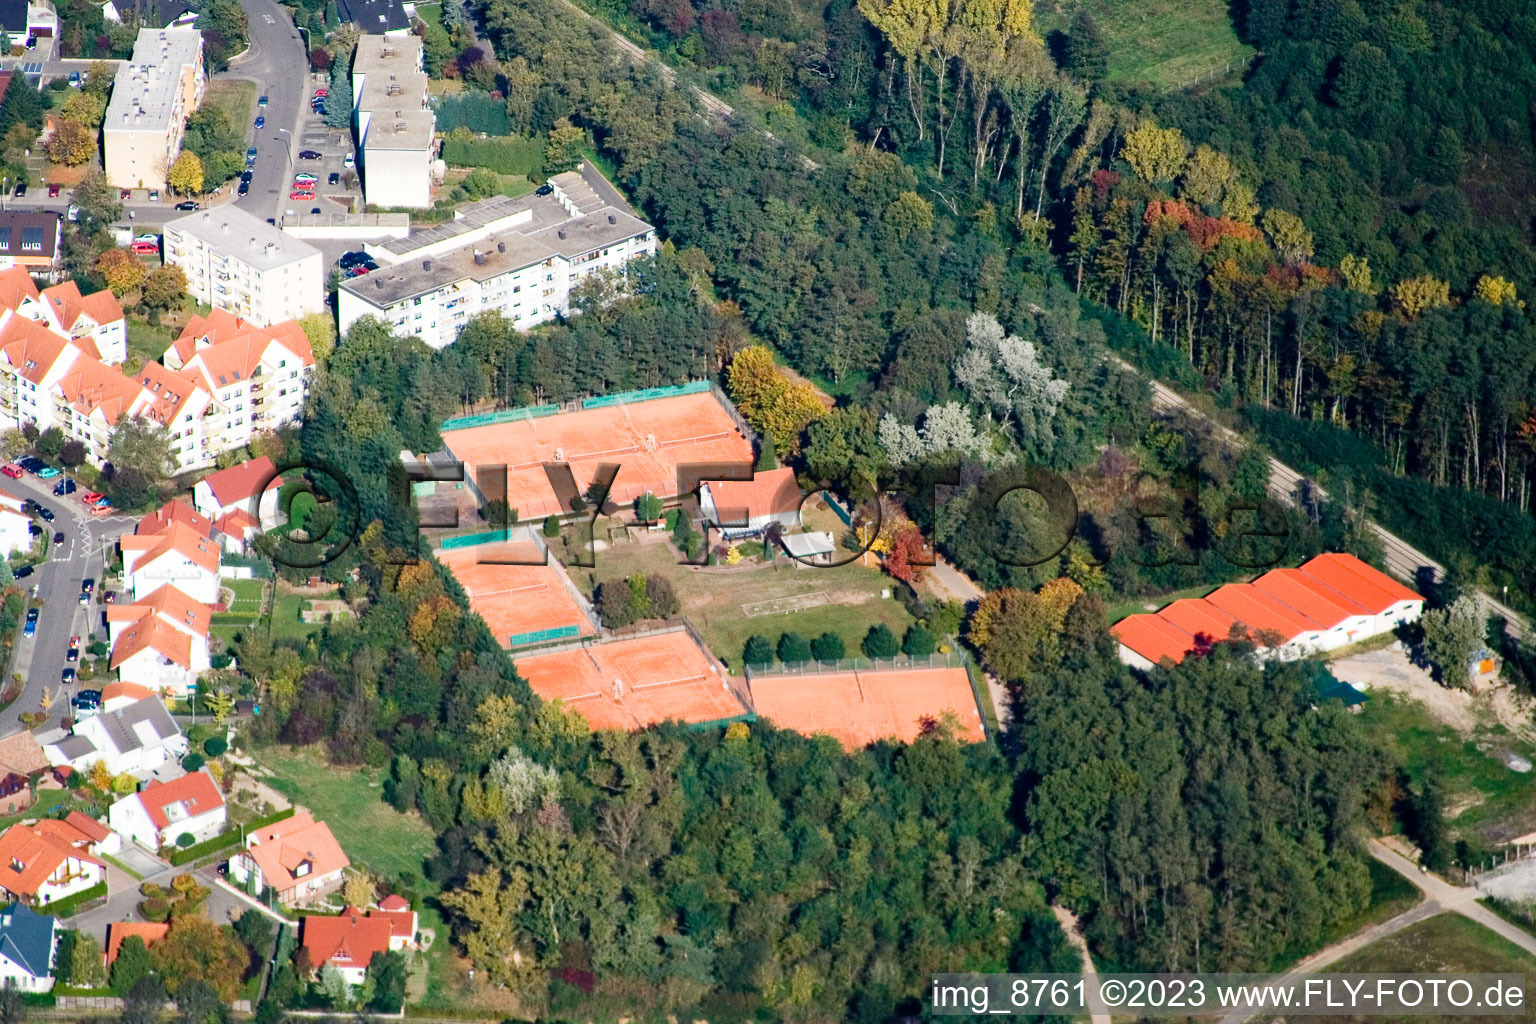 Club de tennis à Jockgrim dans le département Rhénanie-Palatinat, Allemagne hors des airs